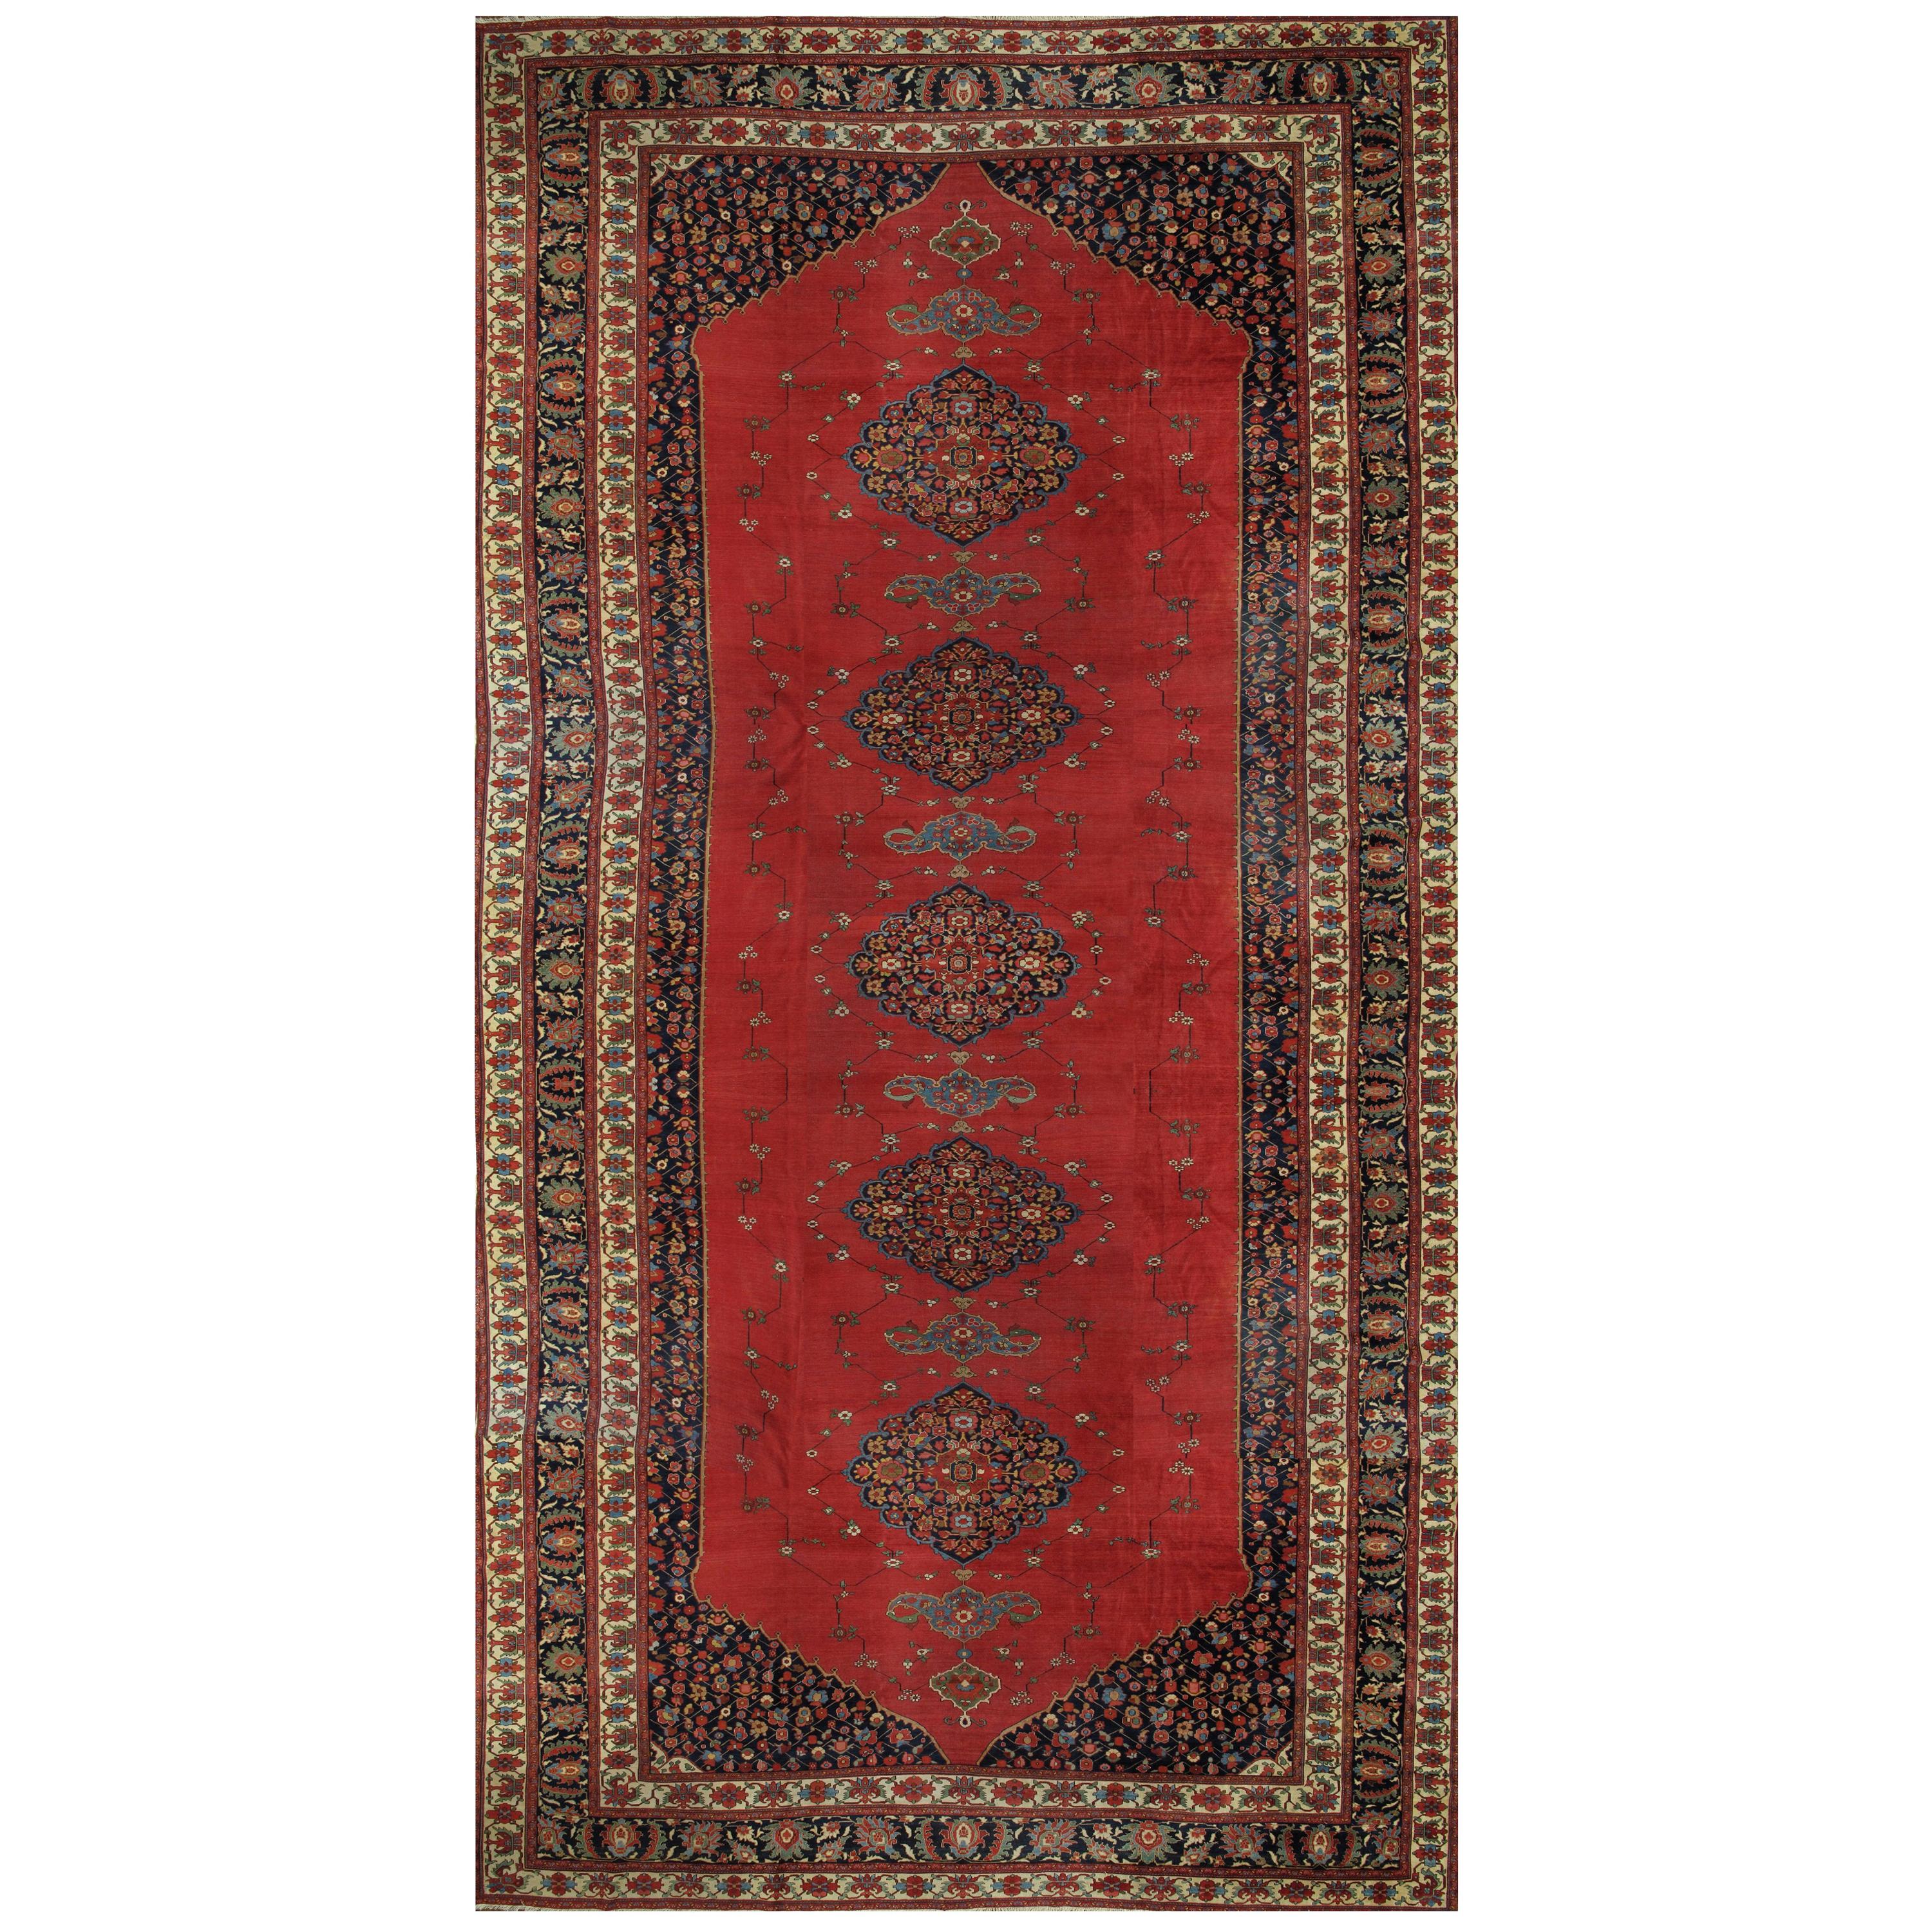 Tapis ancien Farahan Sarouk, tapis oriental fait à la main, ivoire, bleu marine, rouge